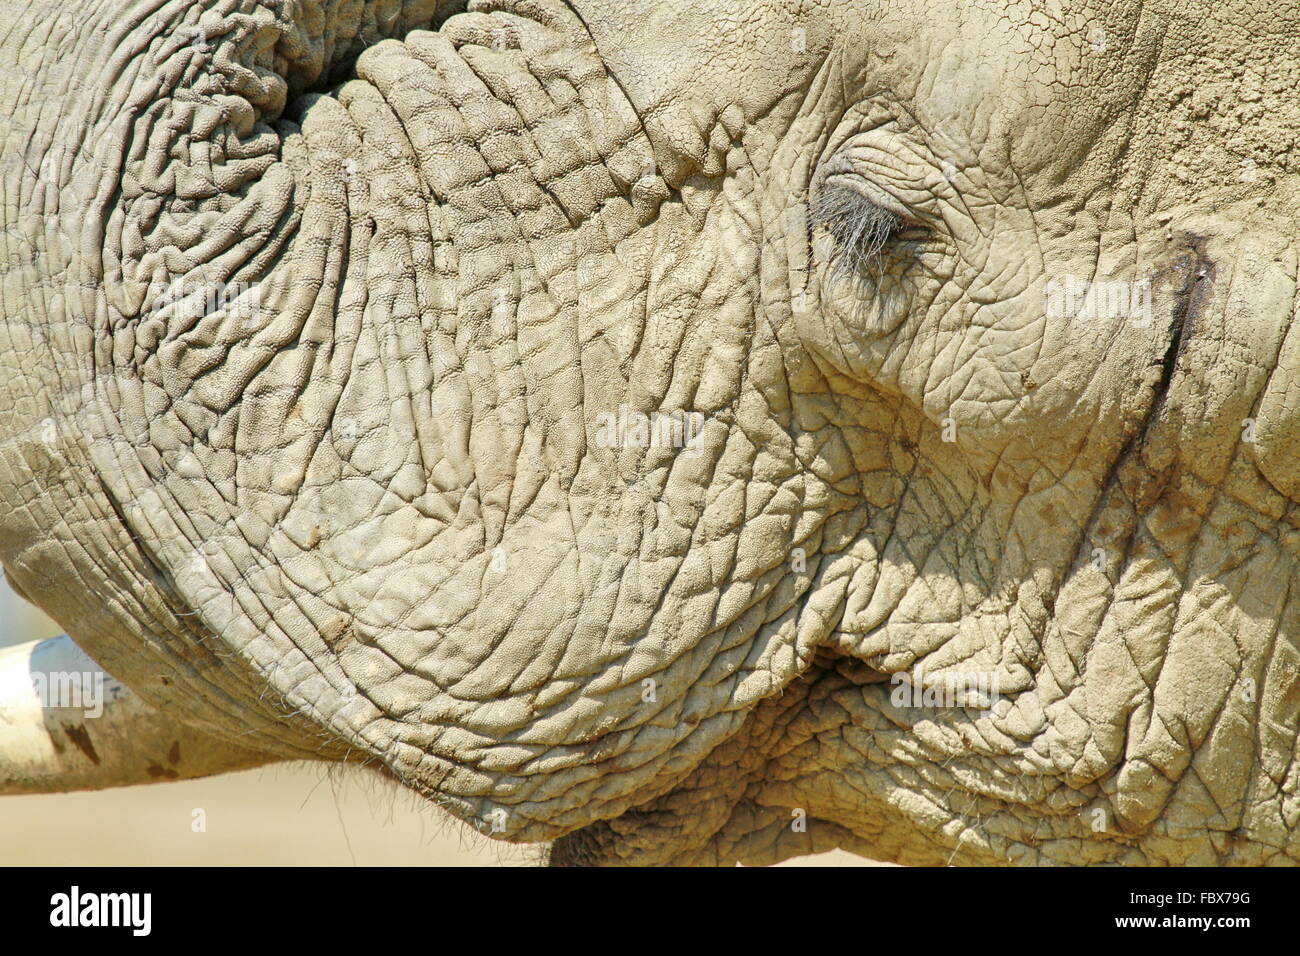 Portrait de l'éléphant Banque D'Images